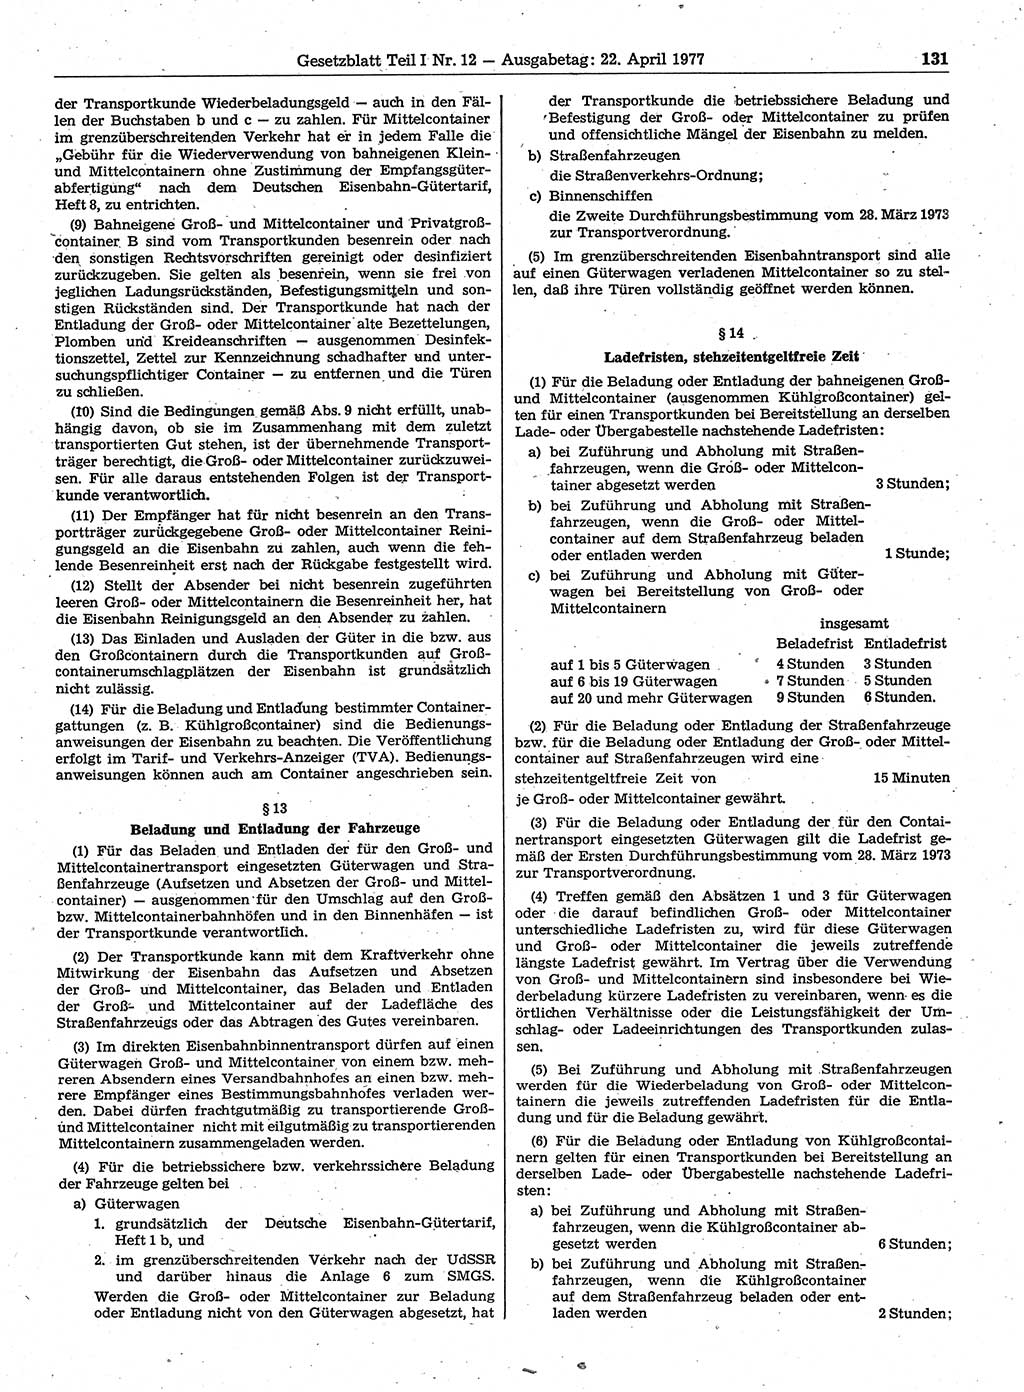 Gesetzblatt (GBl.) der Deutschen Demokratischen Republik (DDR) Teil Ⅰ 1977, Seite 131 (GBl. DDR Ⅰ 1977, S. 131)